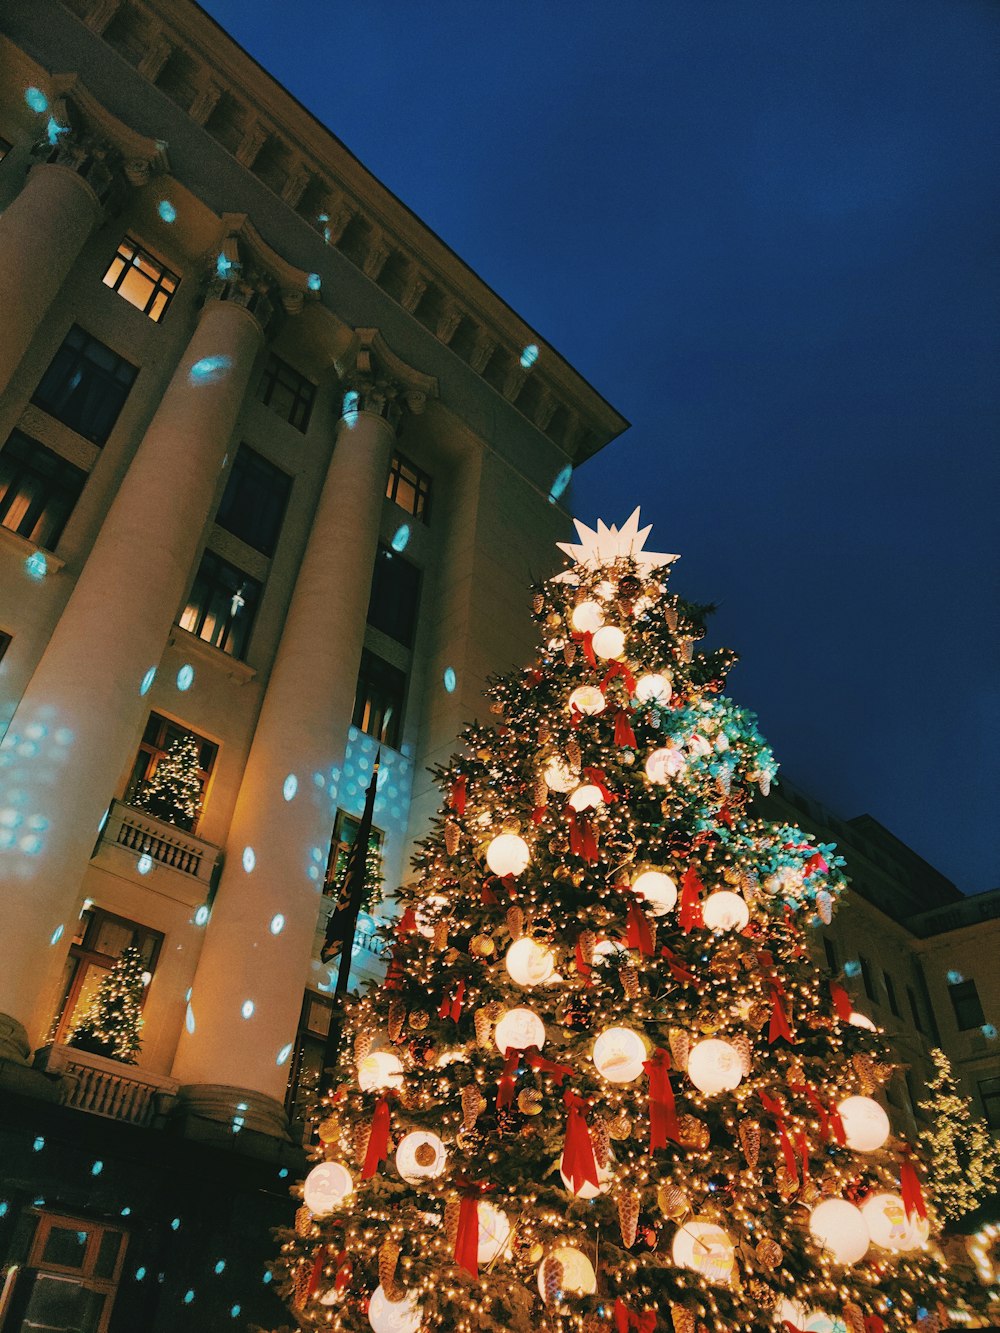 árvore de Natal com luzes de corda perto do edifício de concreto marrom durante a noite